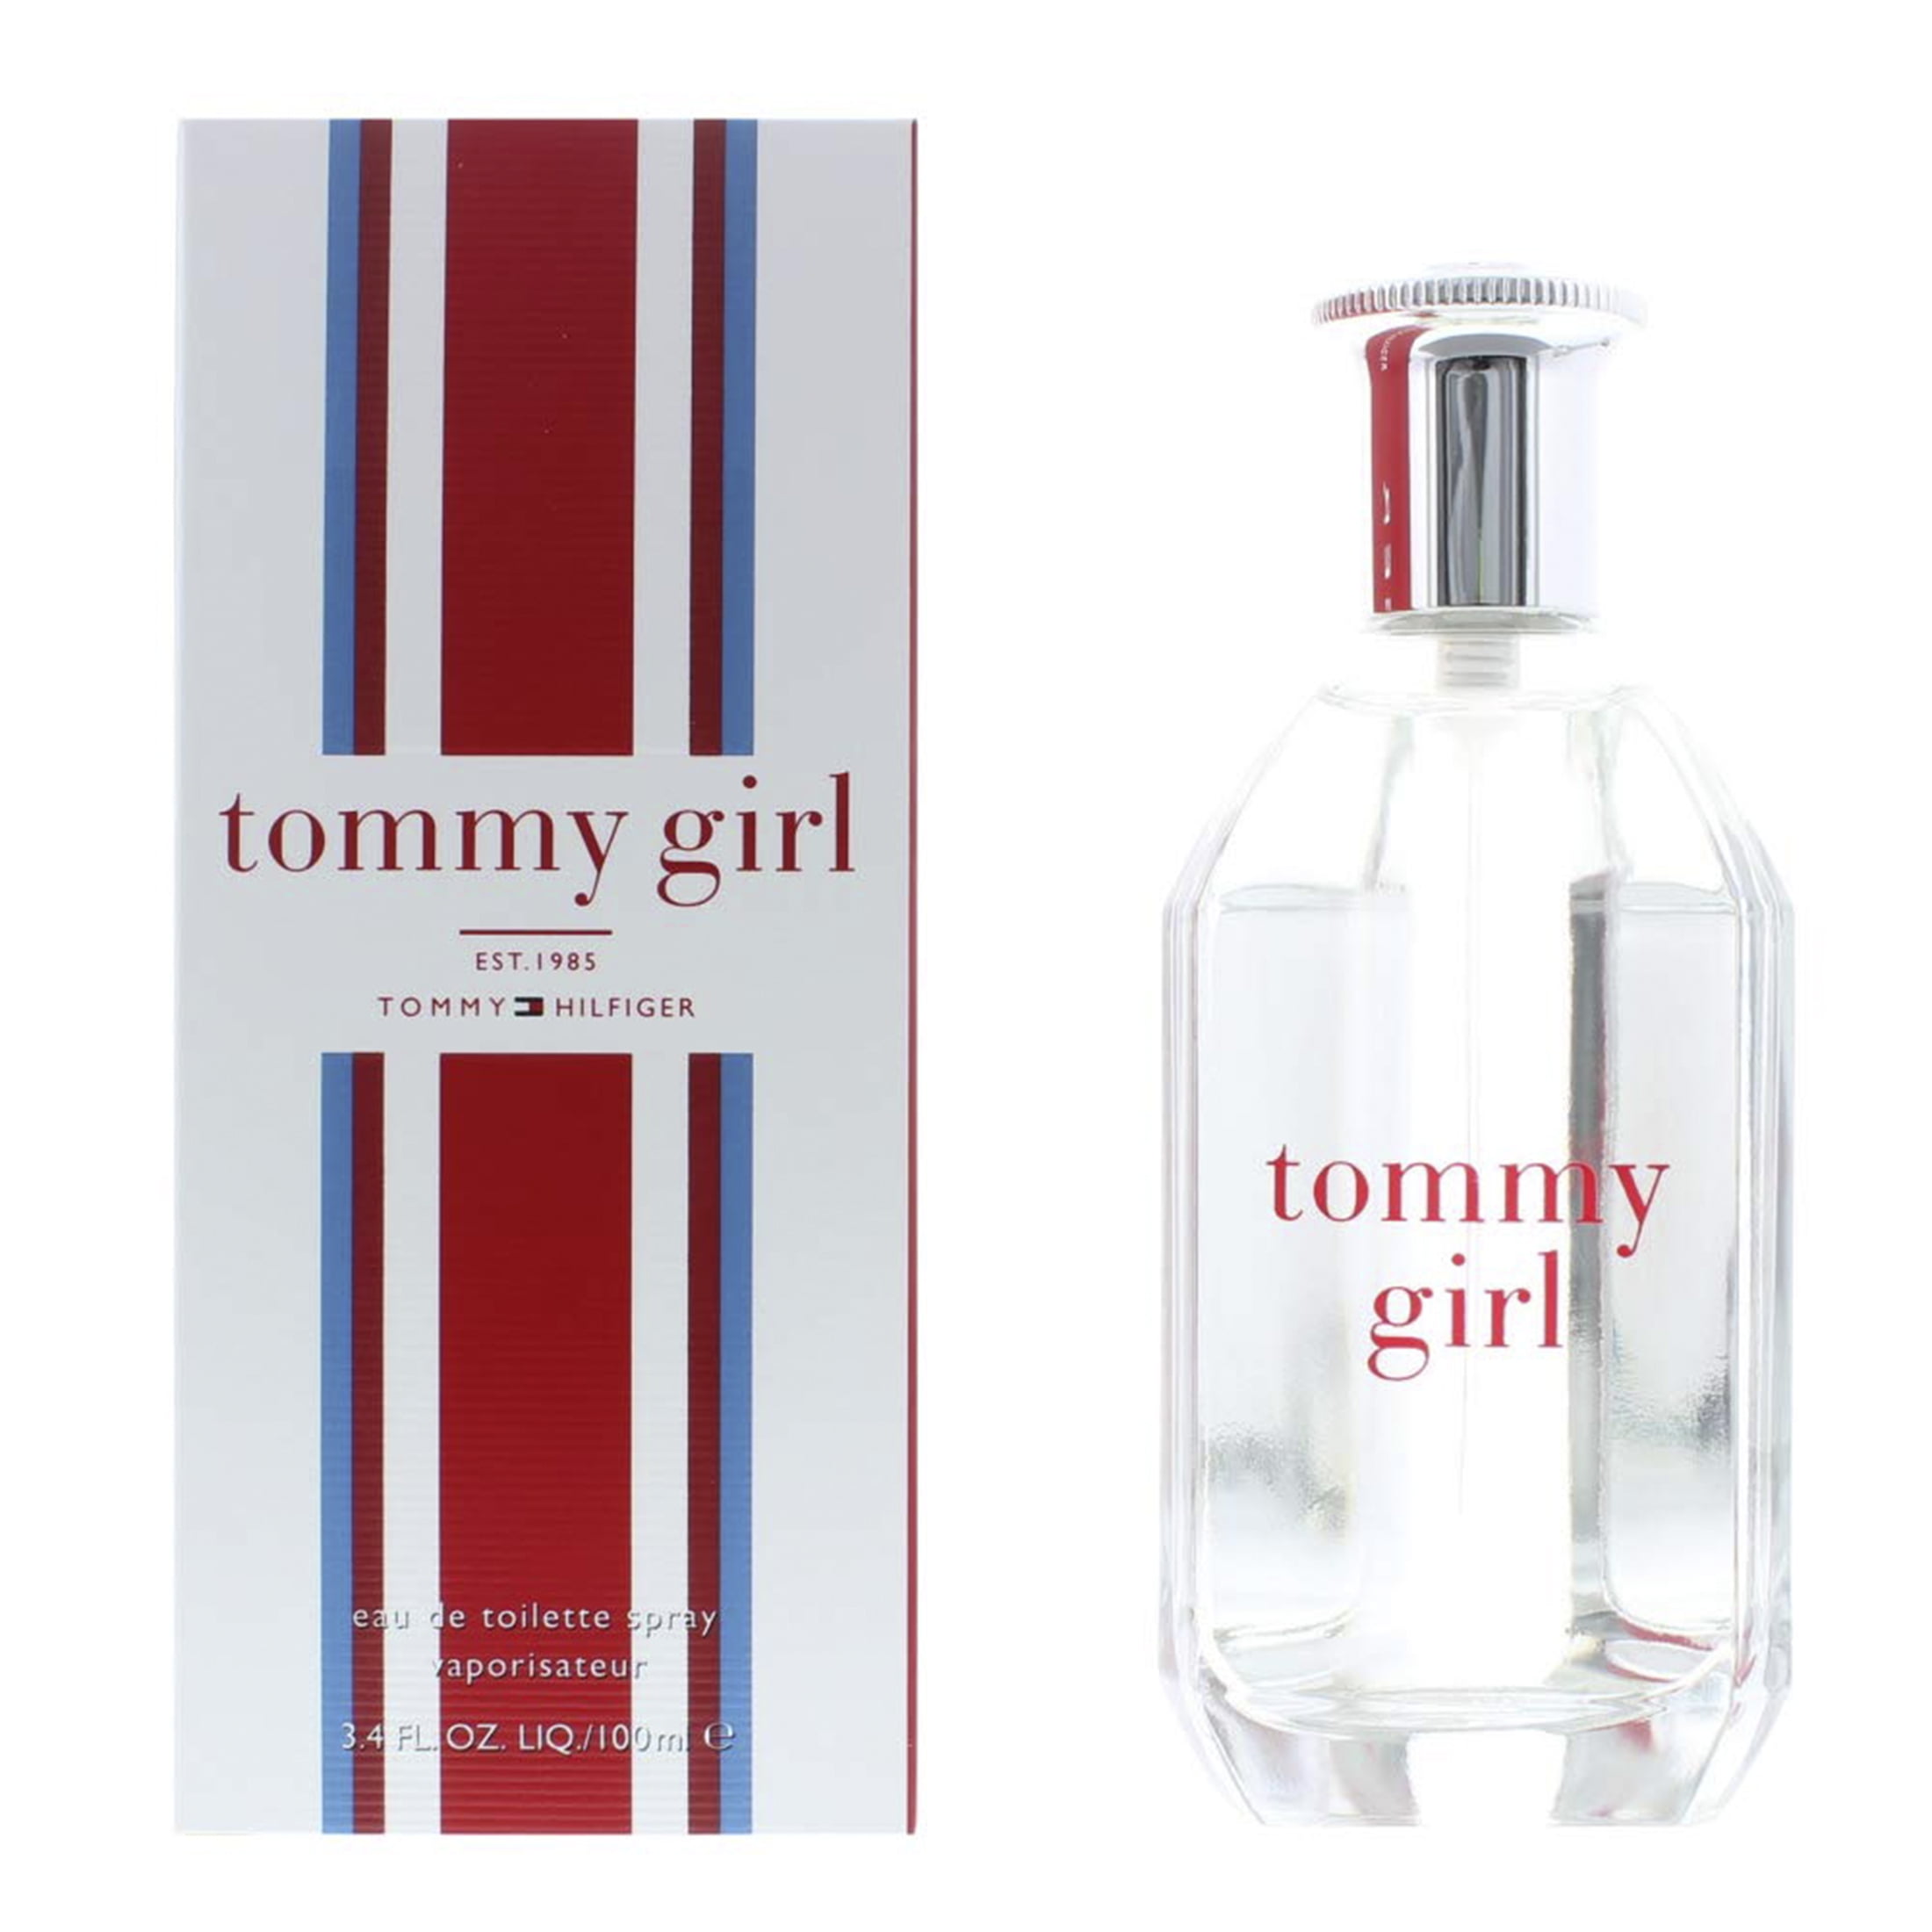 Overlevelse skab Bermad Tommy Hilfiger Tommy Girl Eau de Toilette, Perfume for Women, 3.4 Oz Full  Size - Walmart.com